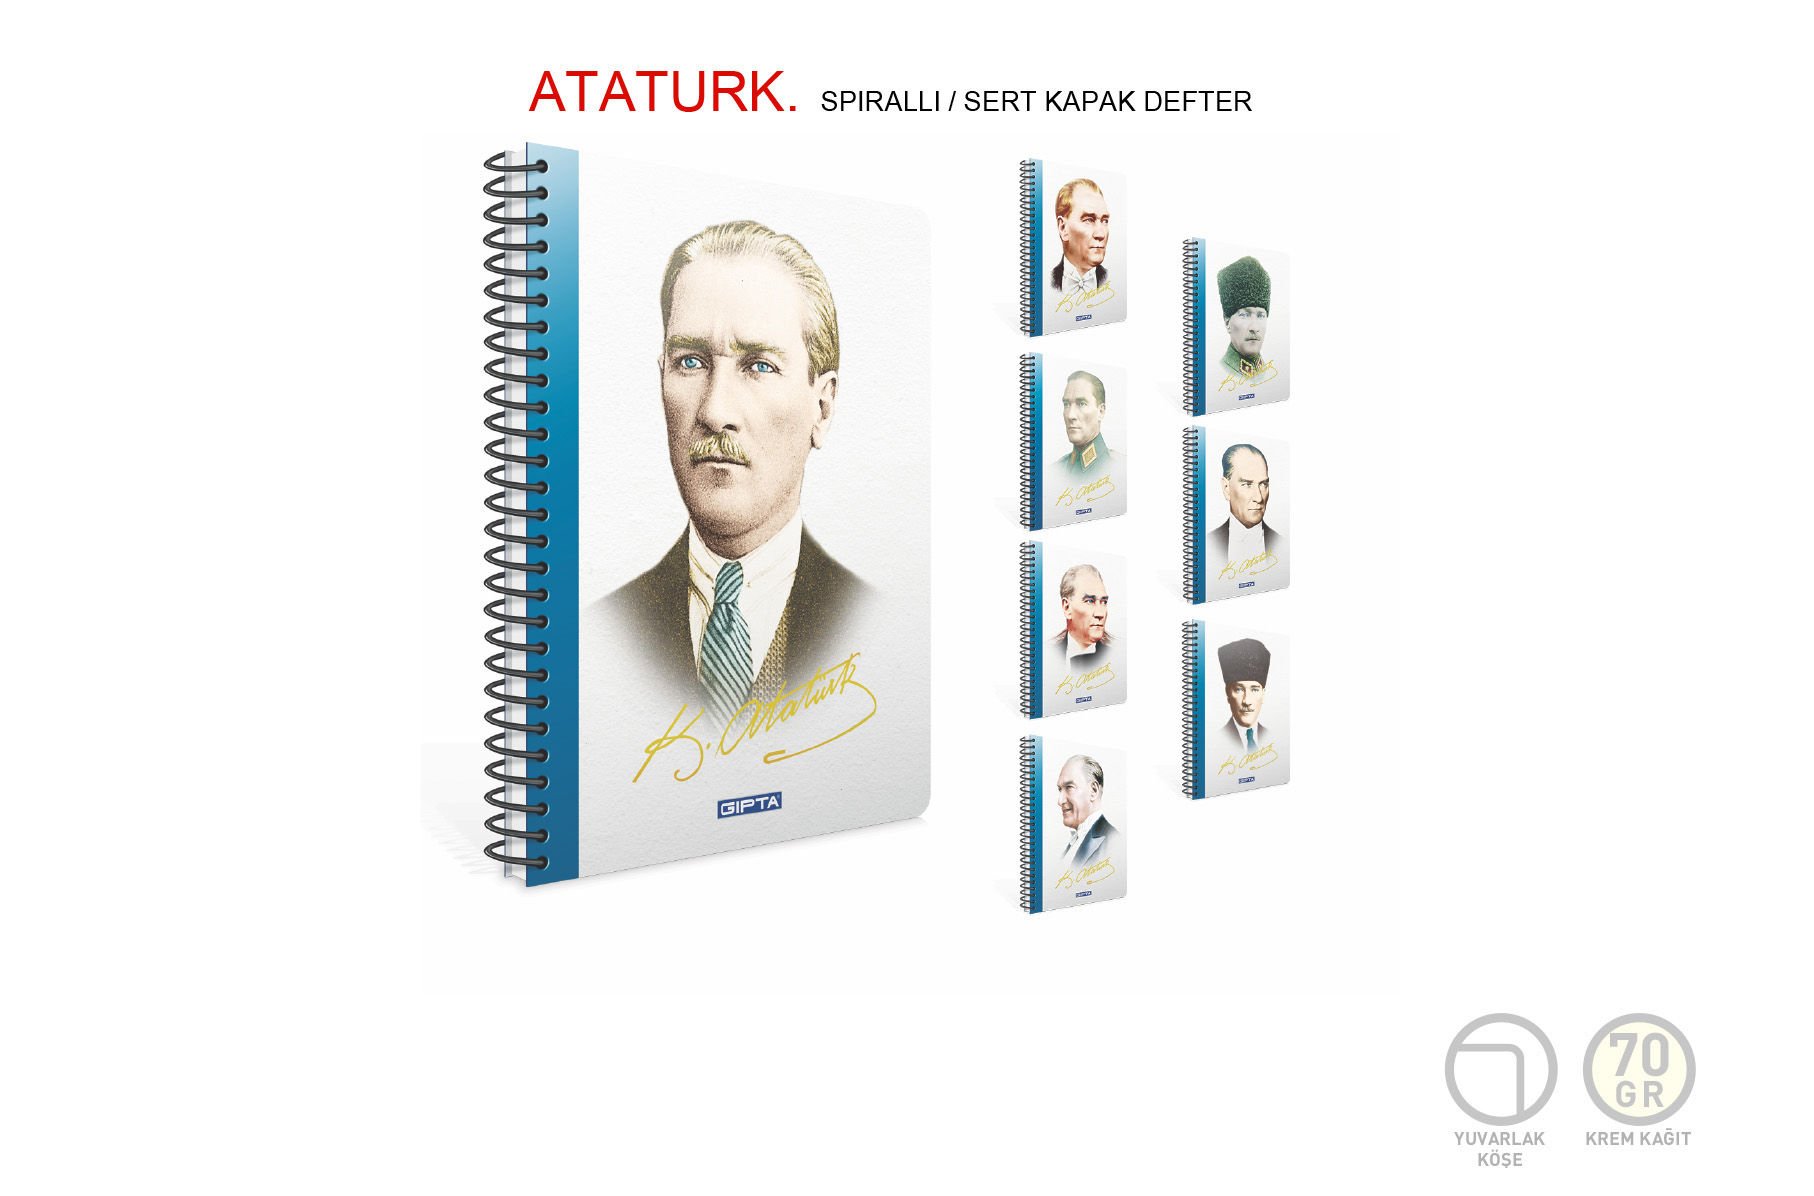 Gıpta Atatürk 17x24cm Sert Kapak 100 Yaprak Çizgili Spiralli Defter